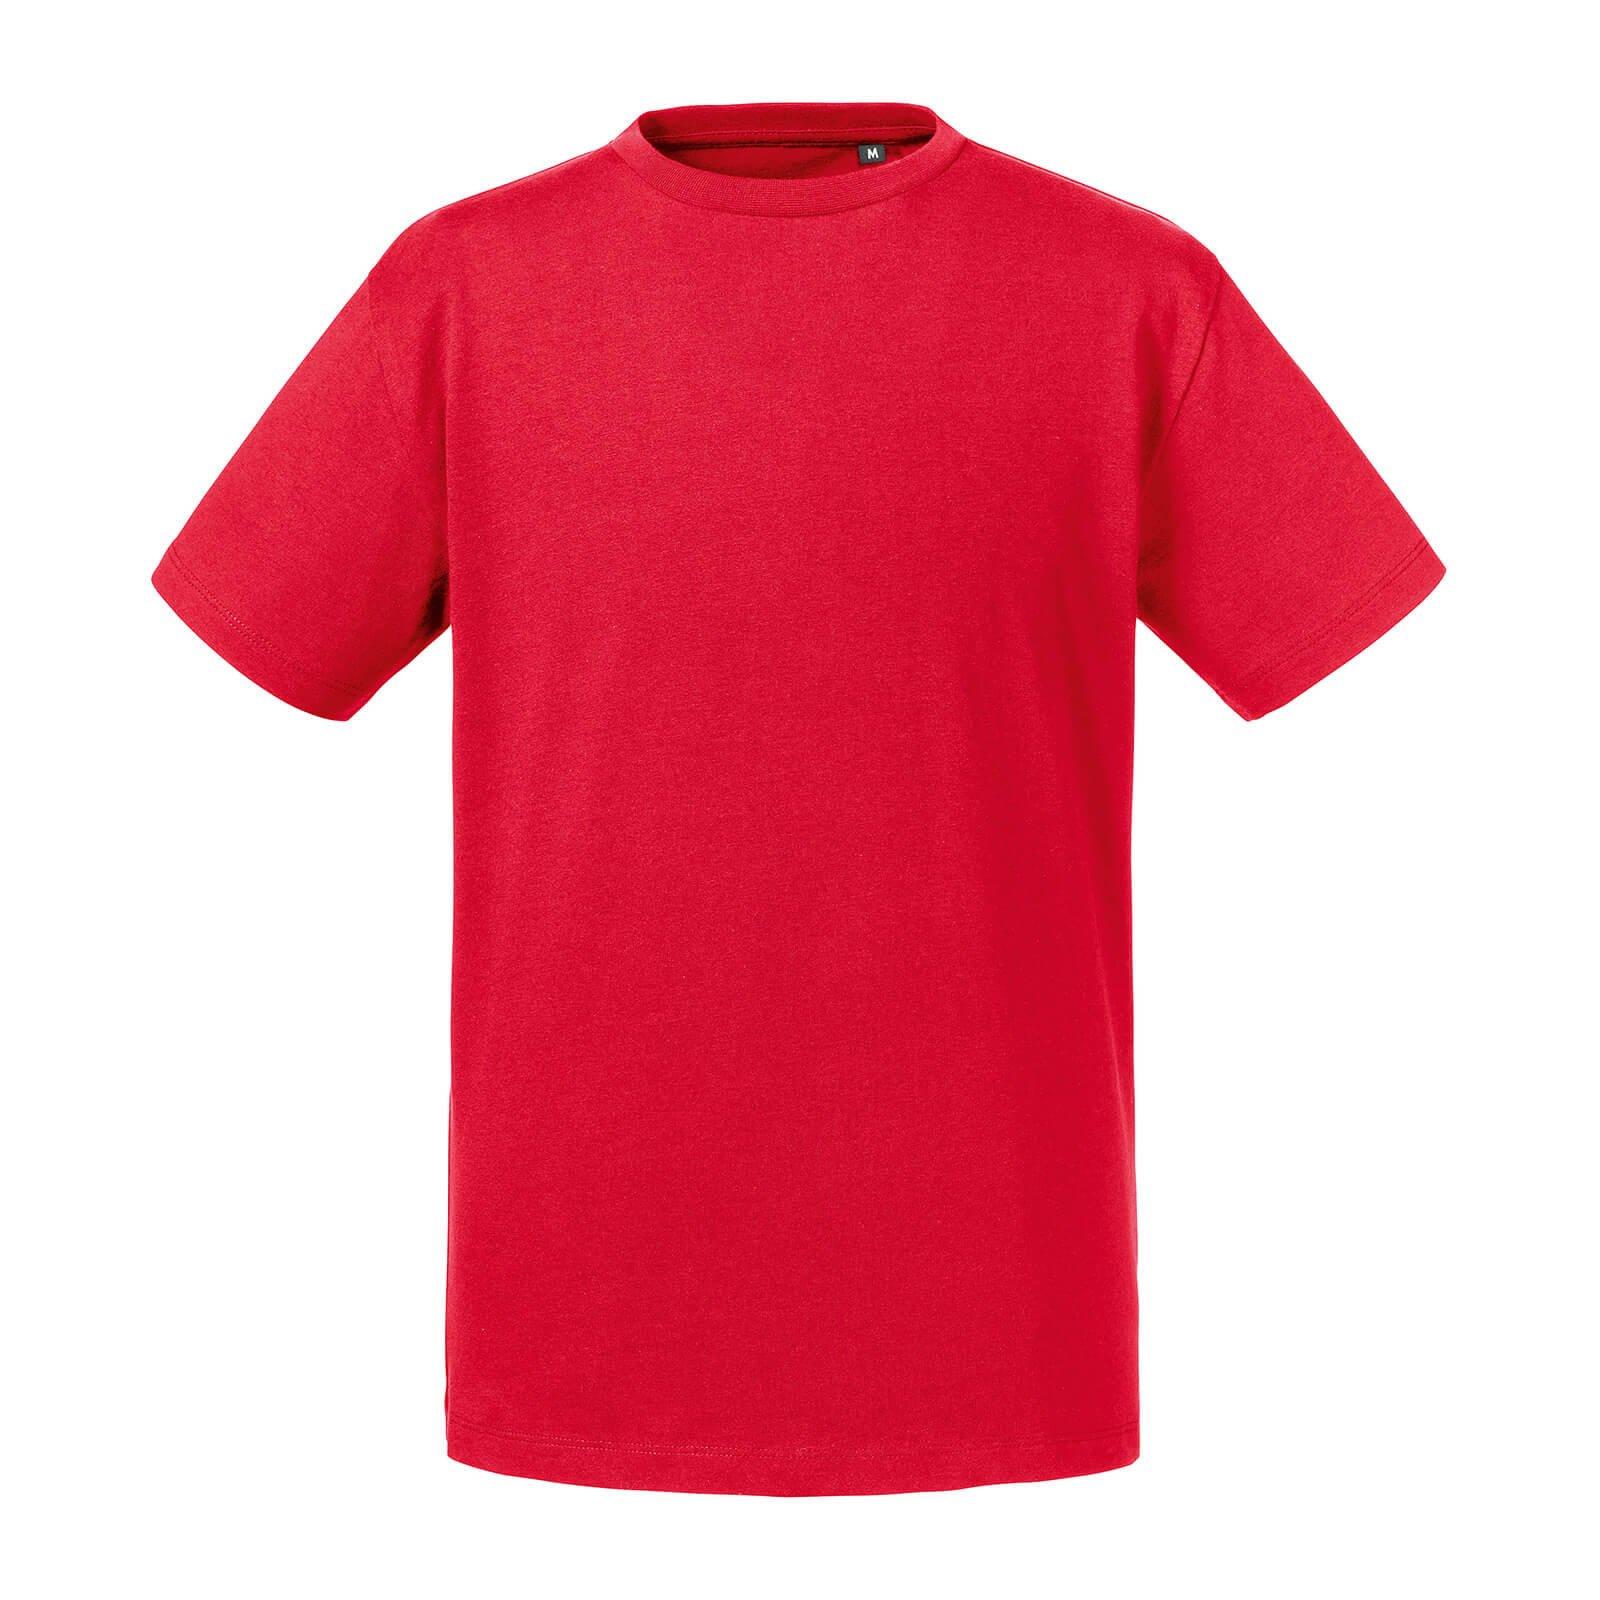 Organik Tshirt Jungen Rot Bunt 116 von Russell